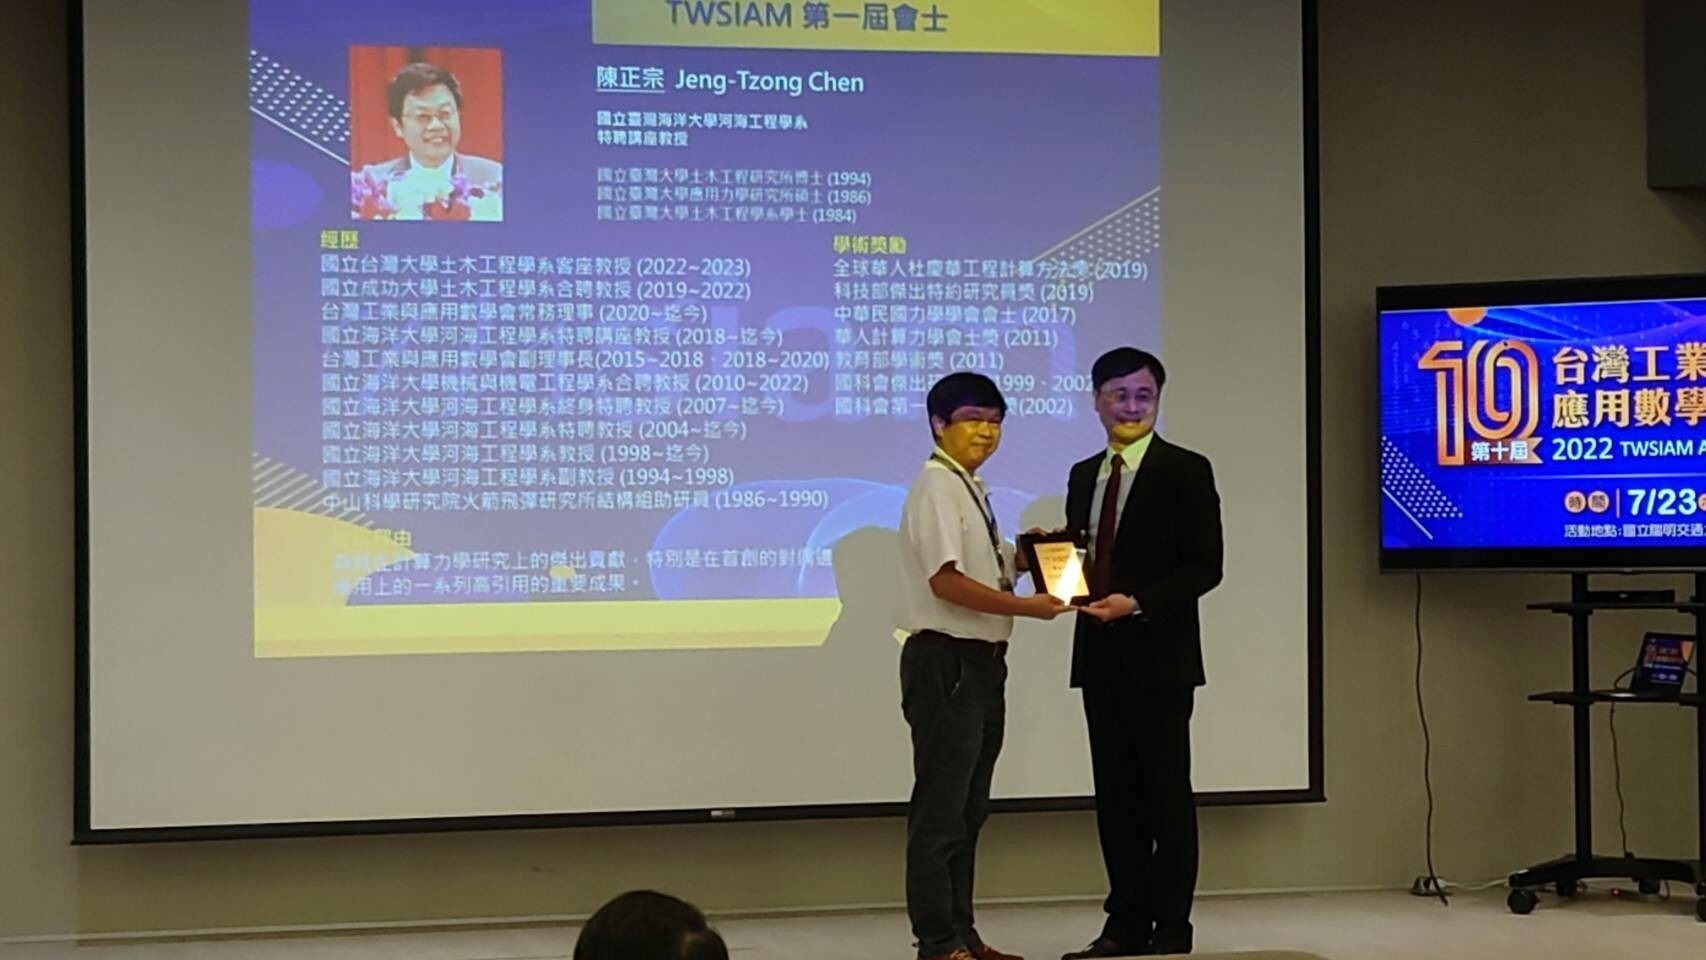 陳正宗特聘講座教授榮獲TWSIAM學會第一屆會士